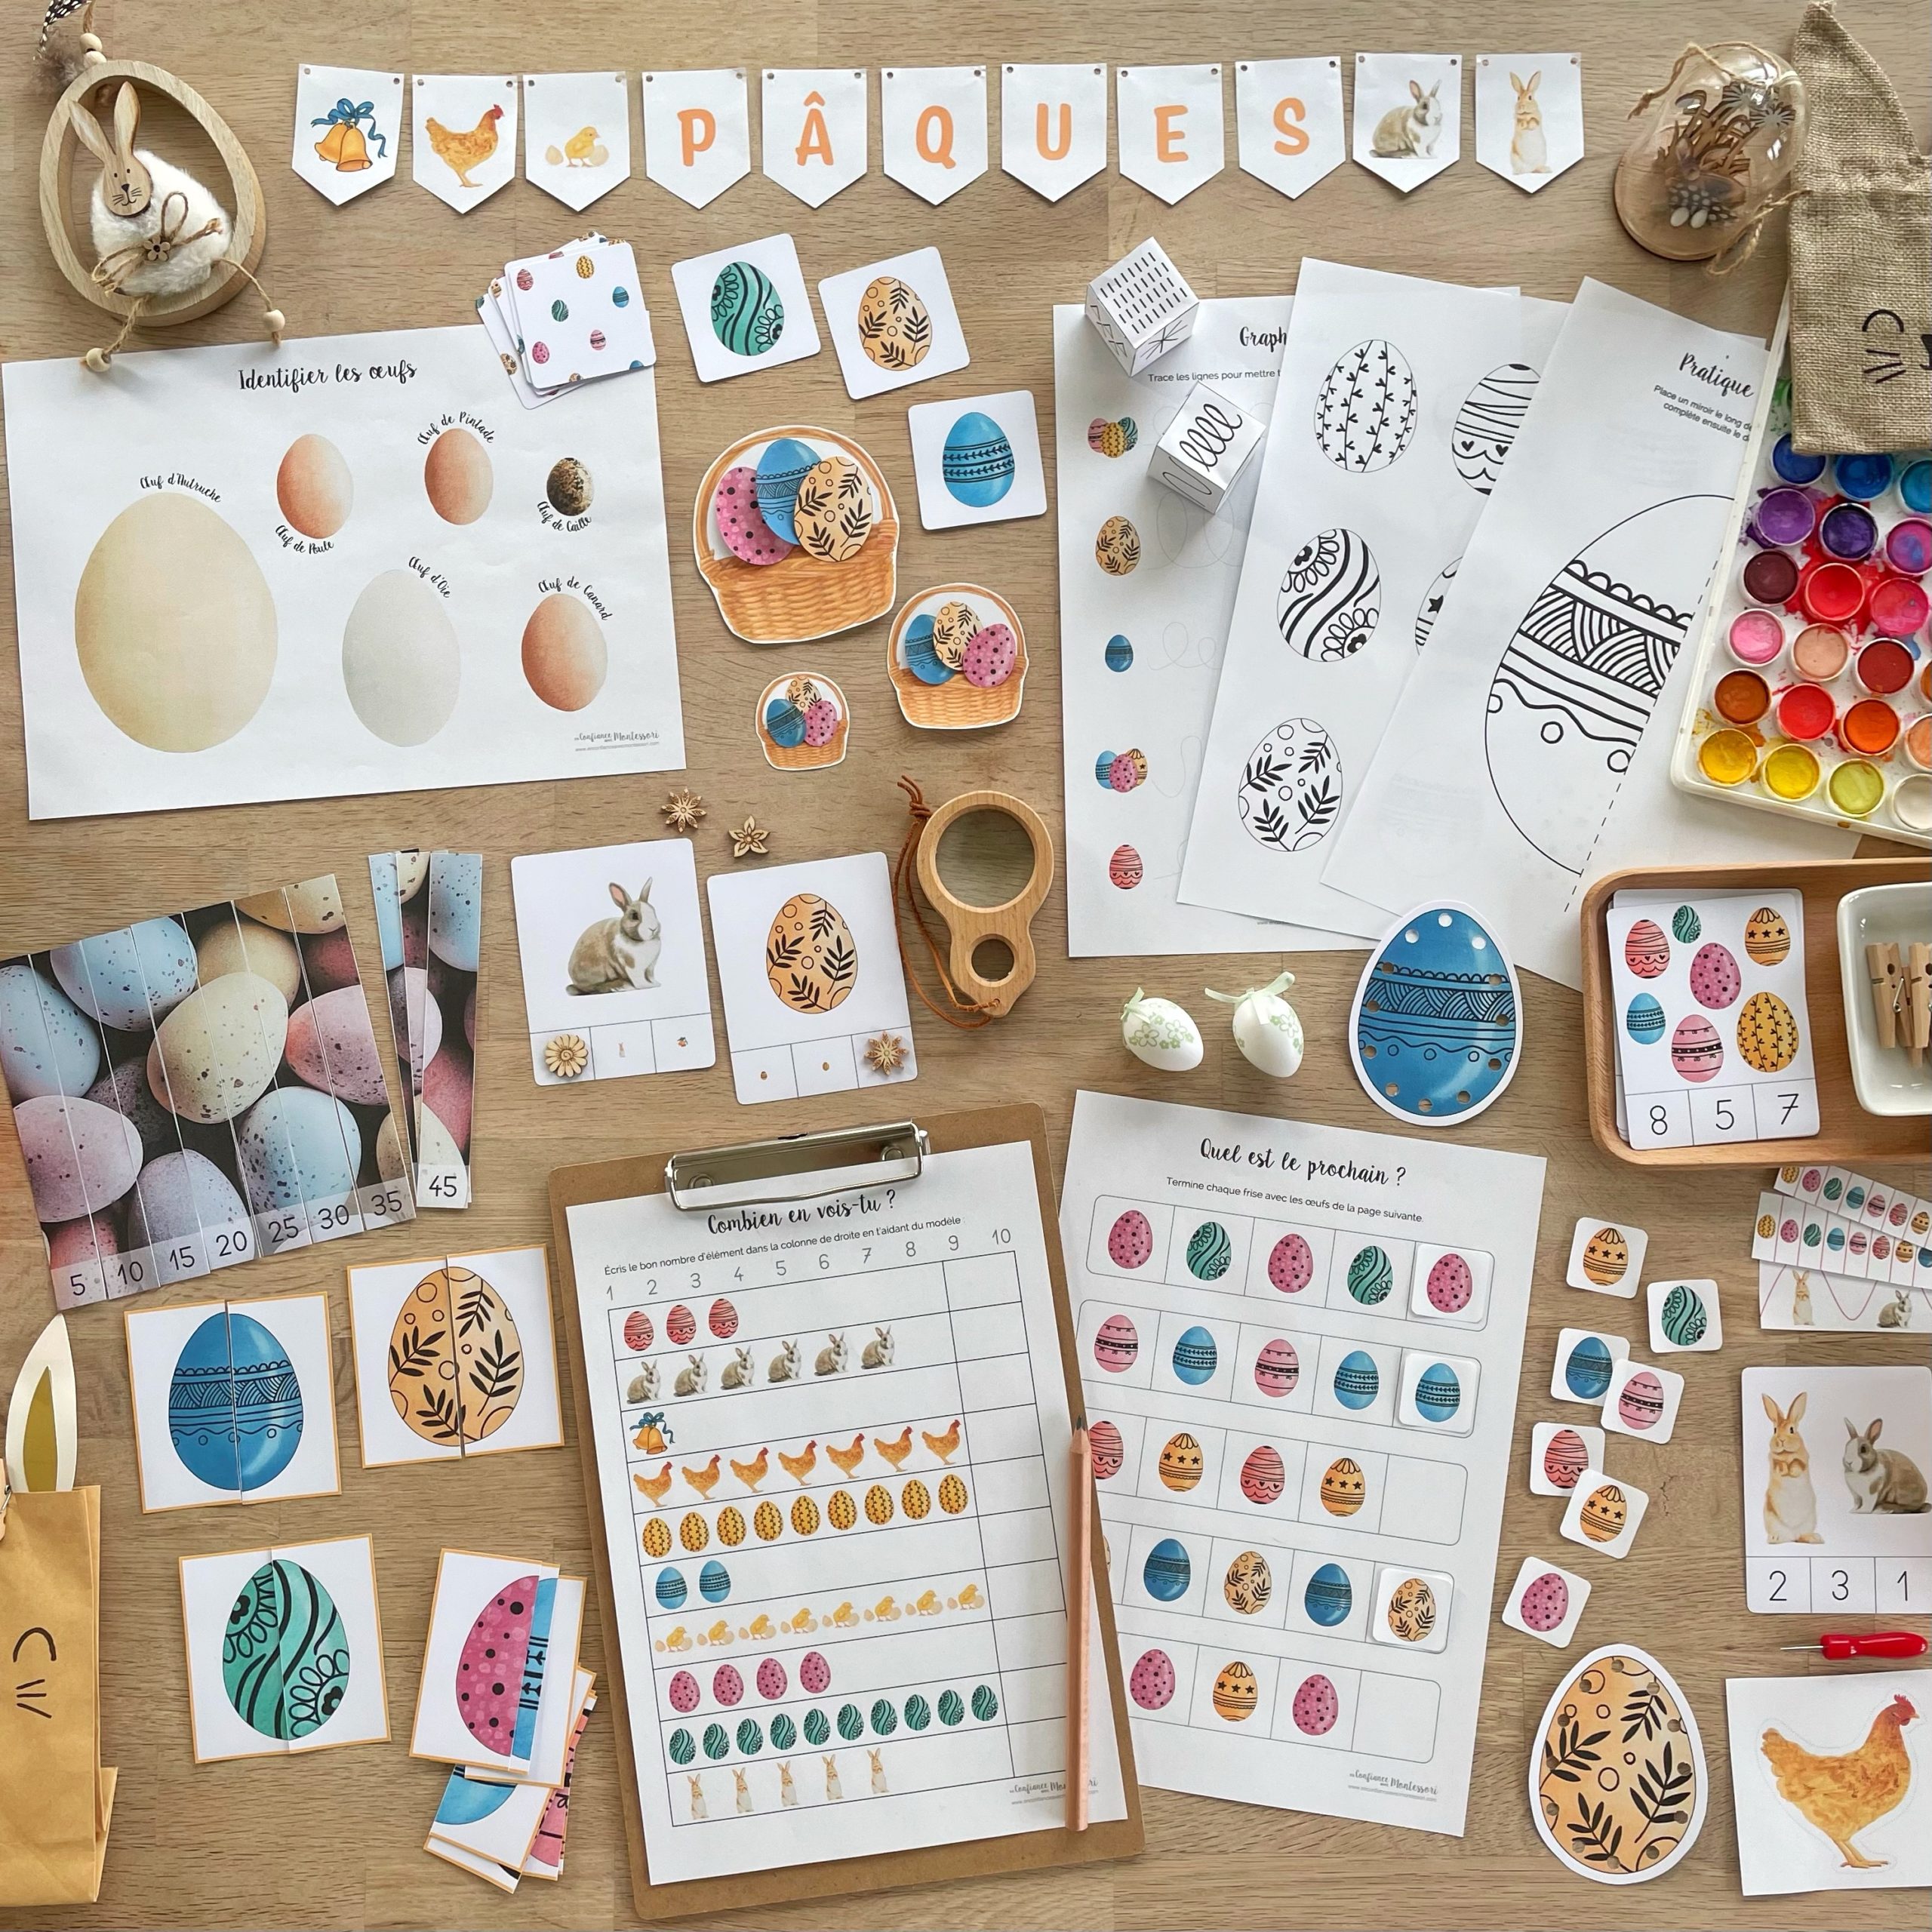 Pack d'inspiration Montessori sur la poule et sur paques